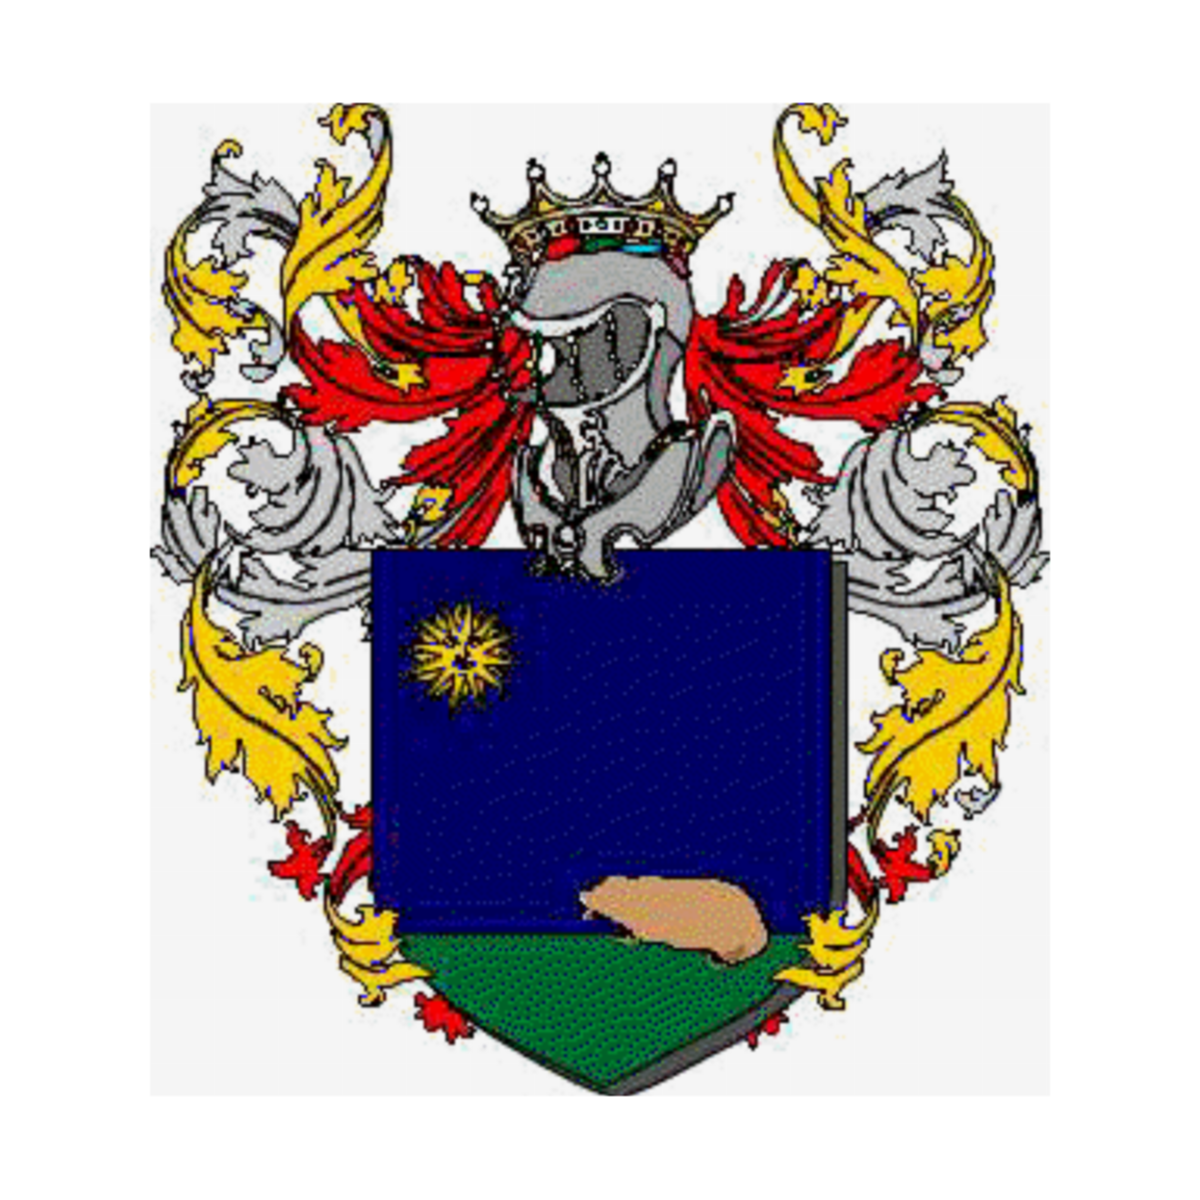 Wappen der Familie Alvarez Calderon